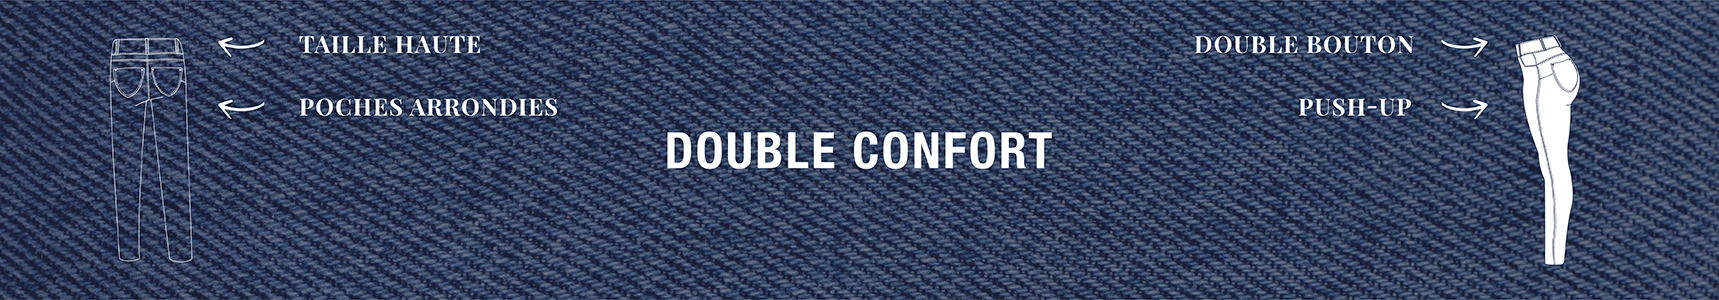 Bannière double confort